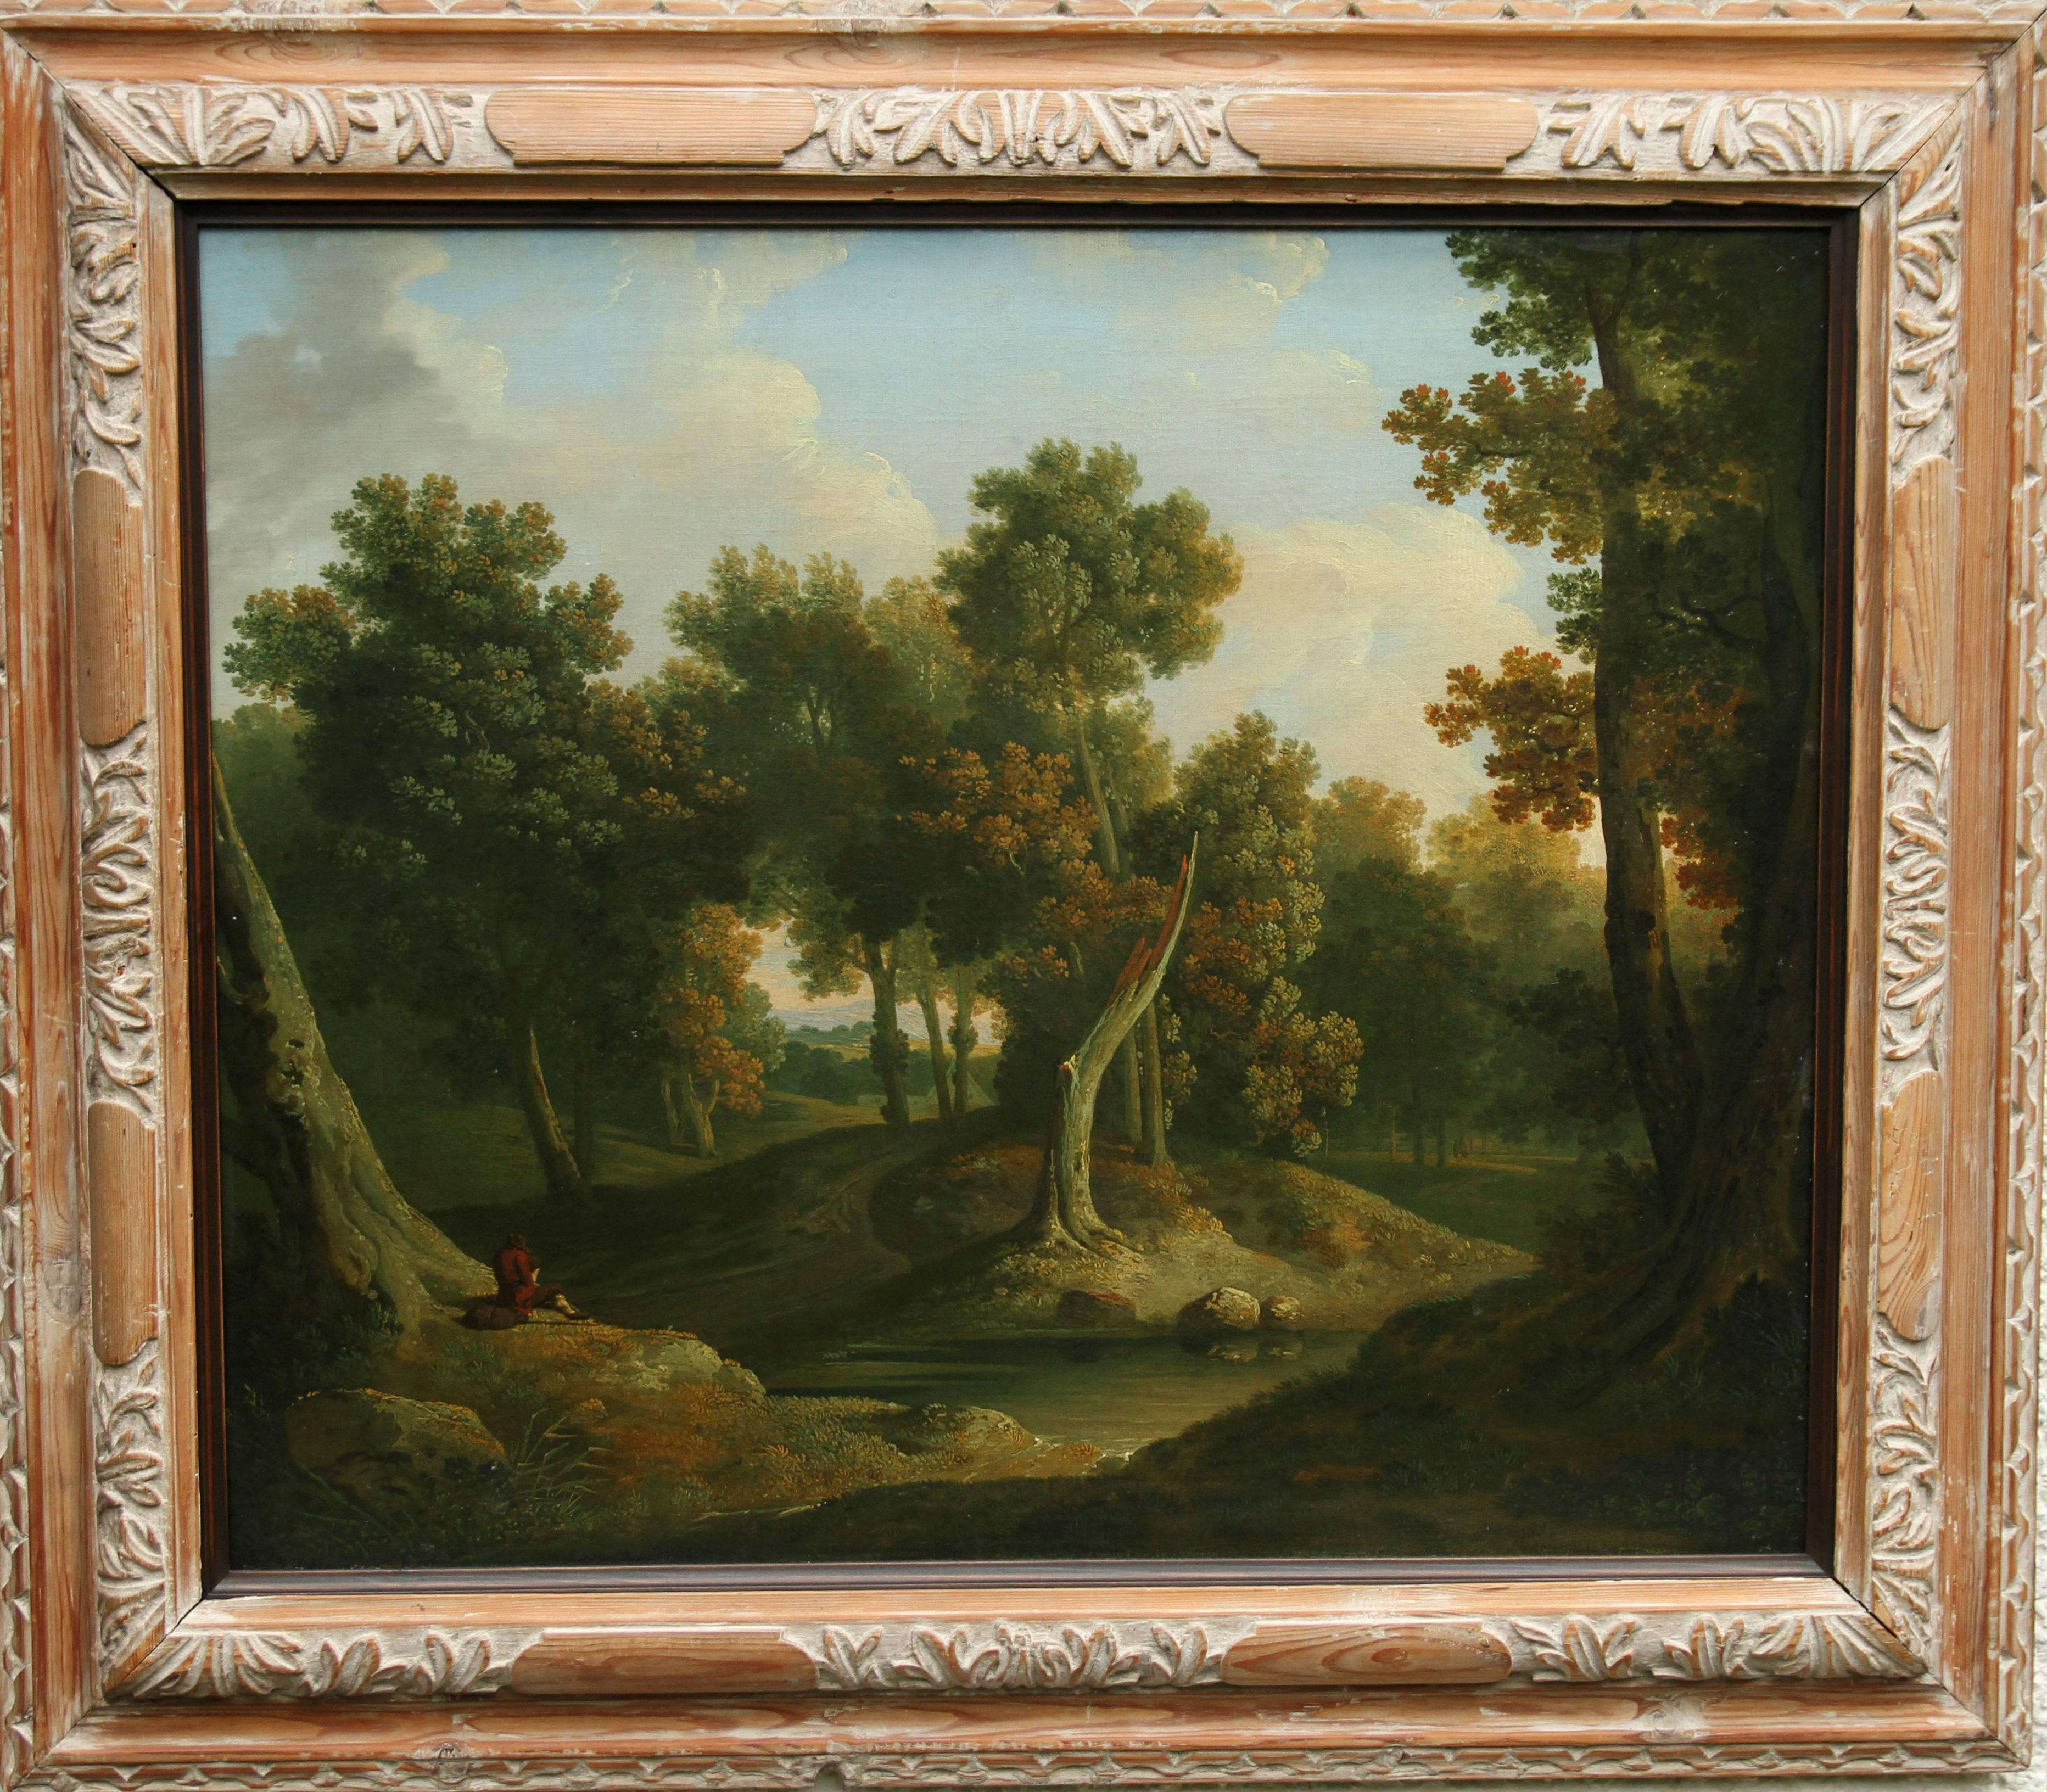 Landscape Painting de James Arthur O'Connor - Paisaje arbolado del Viejo Maestro - Pintura al óleo irlandesa de 1830 sobre el arte del bosque 